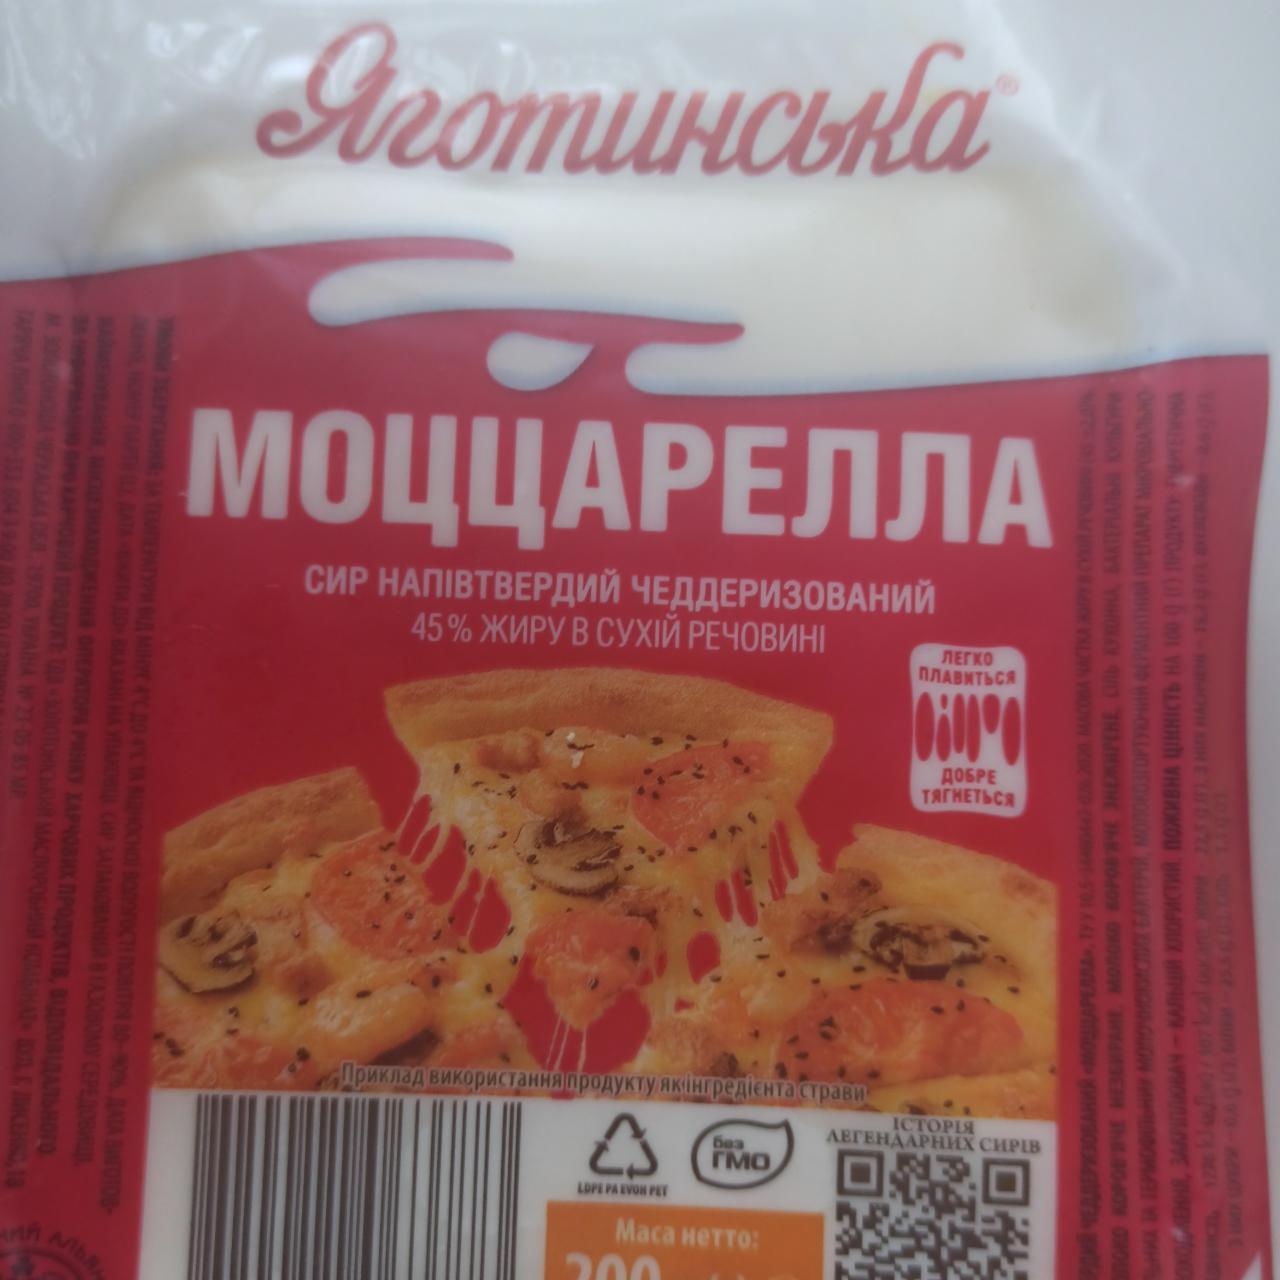 Фото - Моцарелла Яготинська сир напівтвердий чеддеризований 45%